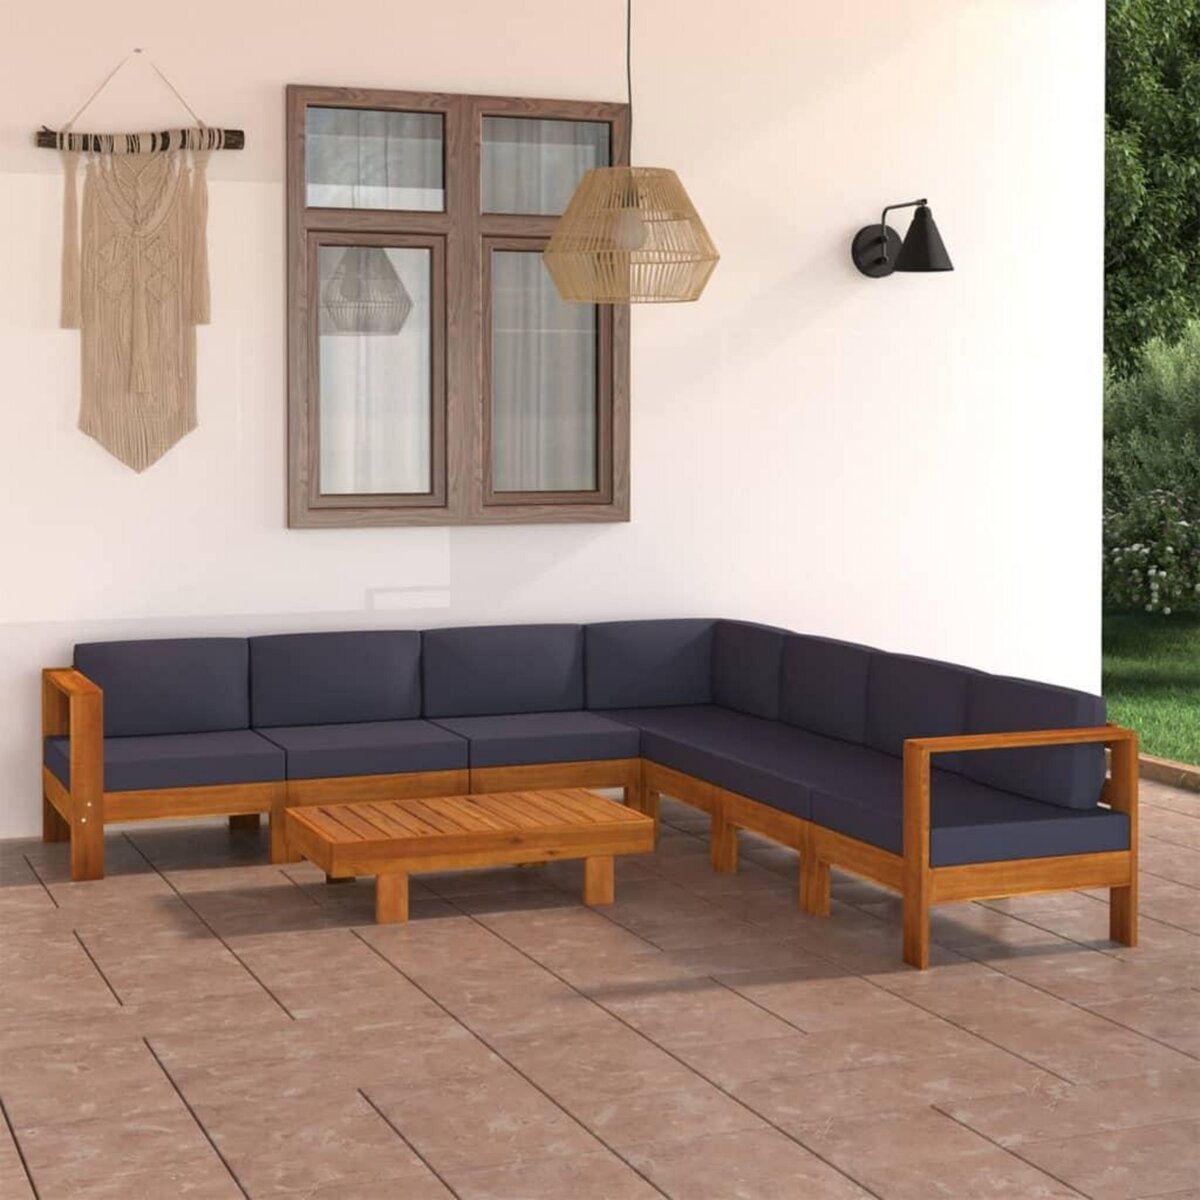 Banc de jardin en bois acacia grisé avec coussin pour meuble de jardin